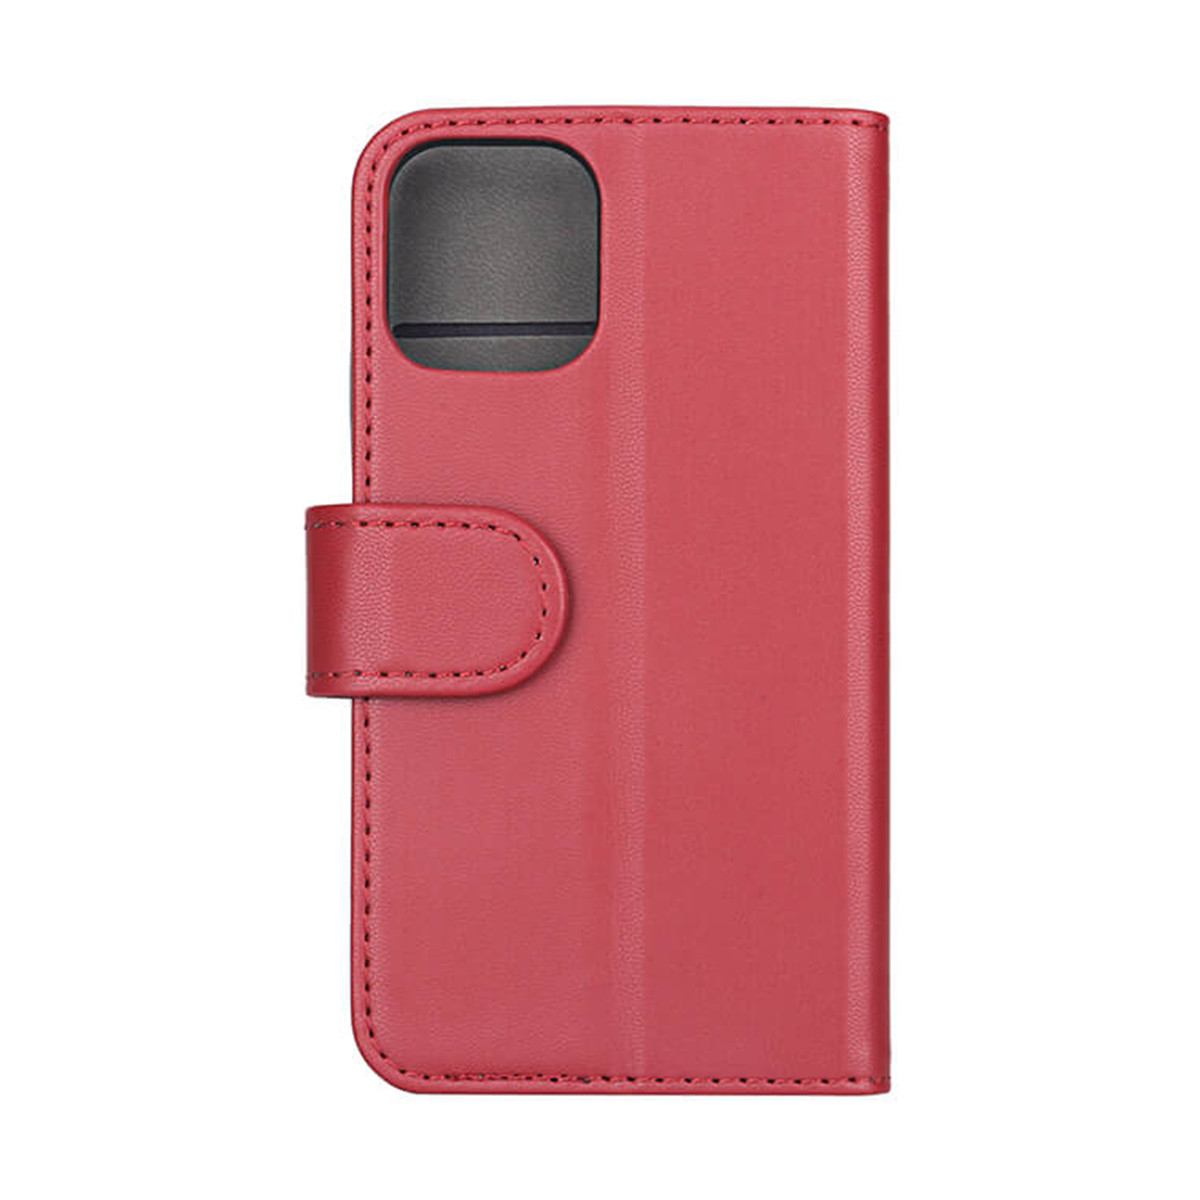 GEAR Mobilfodral Limited Edition, iPhone 12 Mini, röd